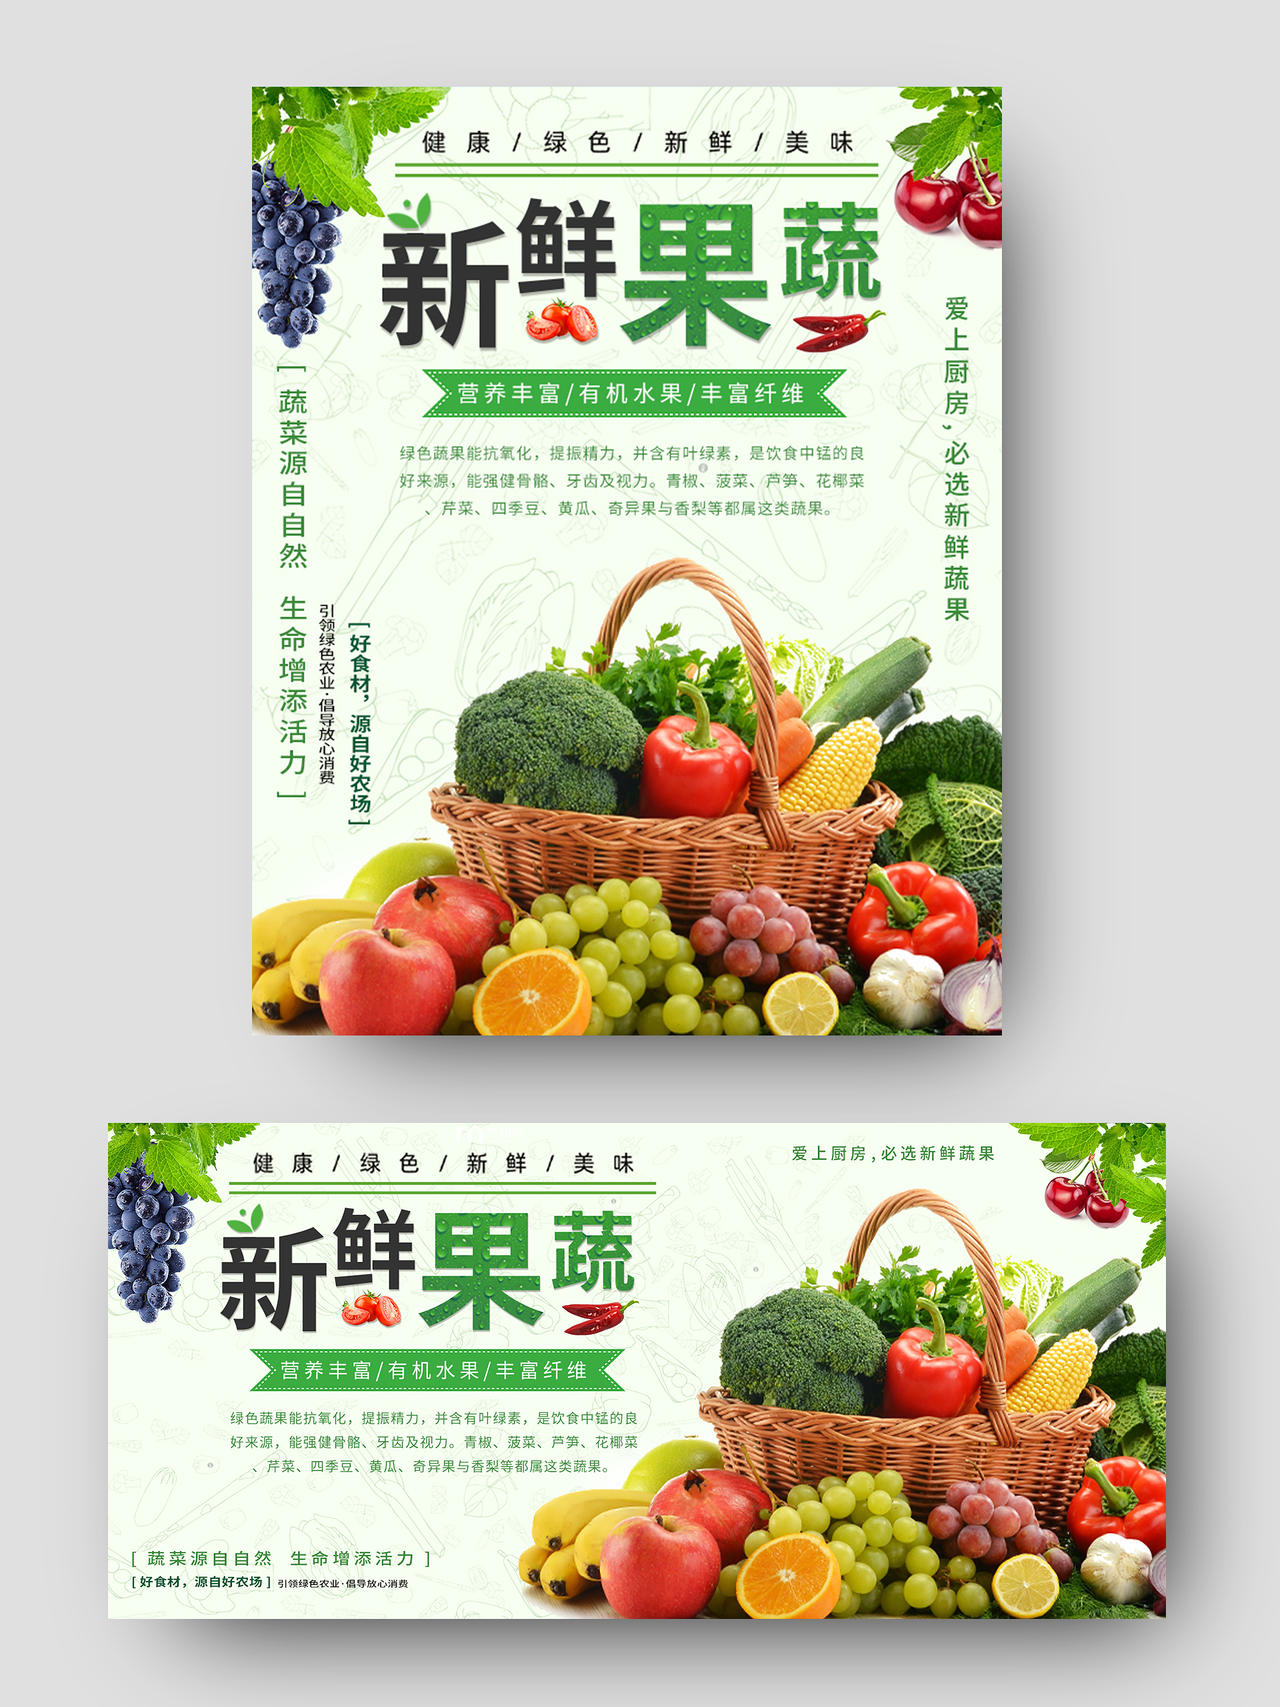 绿色风格清新新鲜果蔬健康生鲜淘宝电商天猫促销海报banner